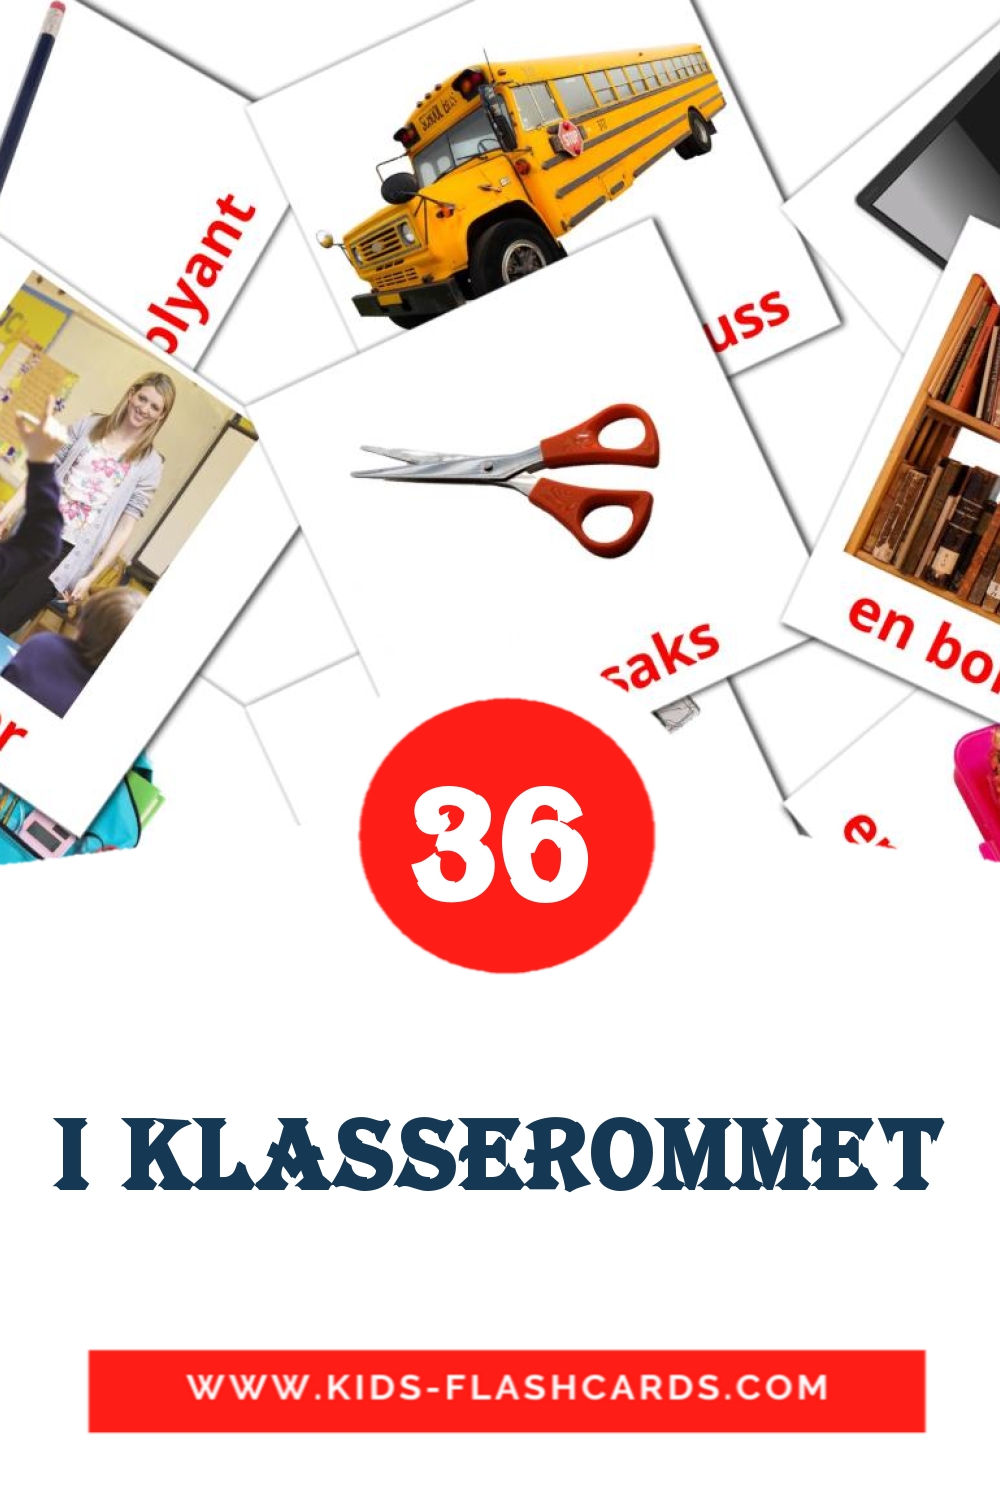 36 tarjetas didacticas de I klasserommet para el jardín de infancia en noruego